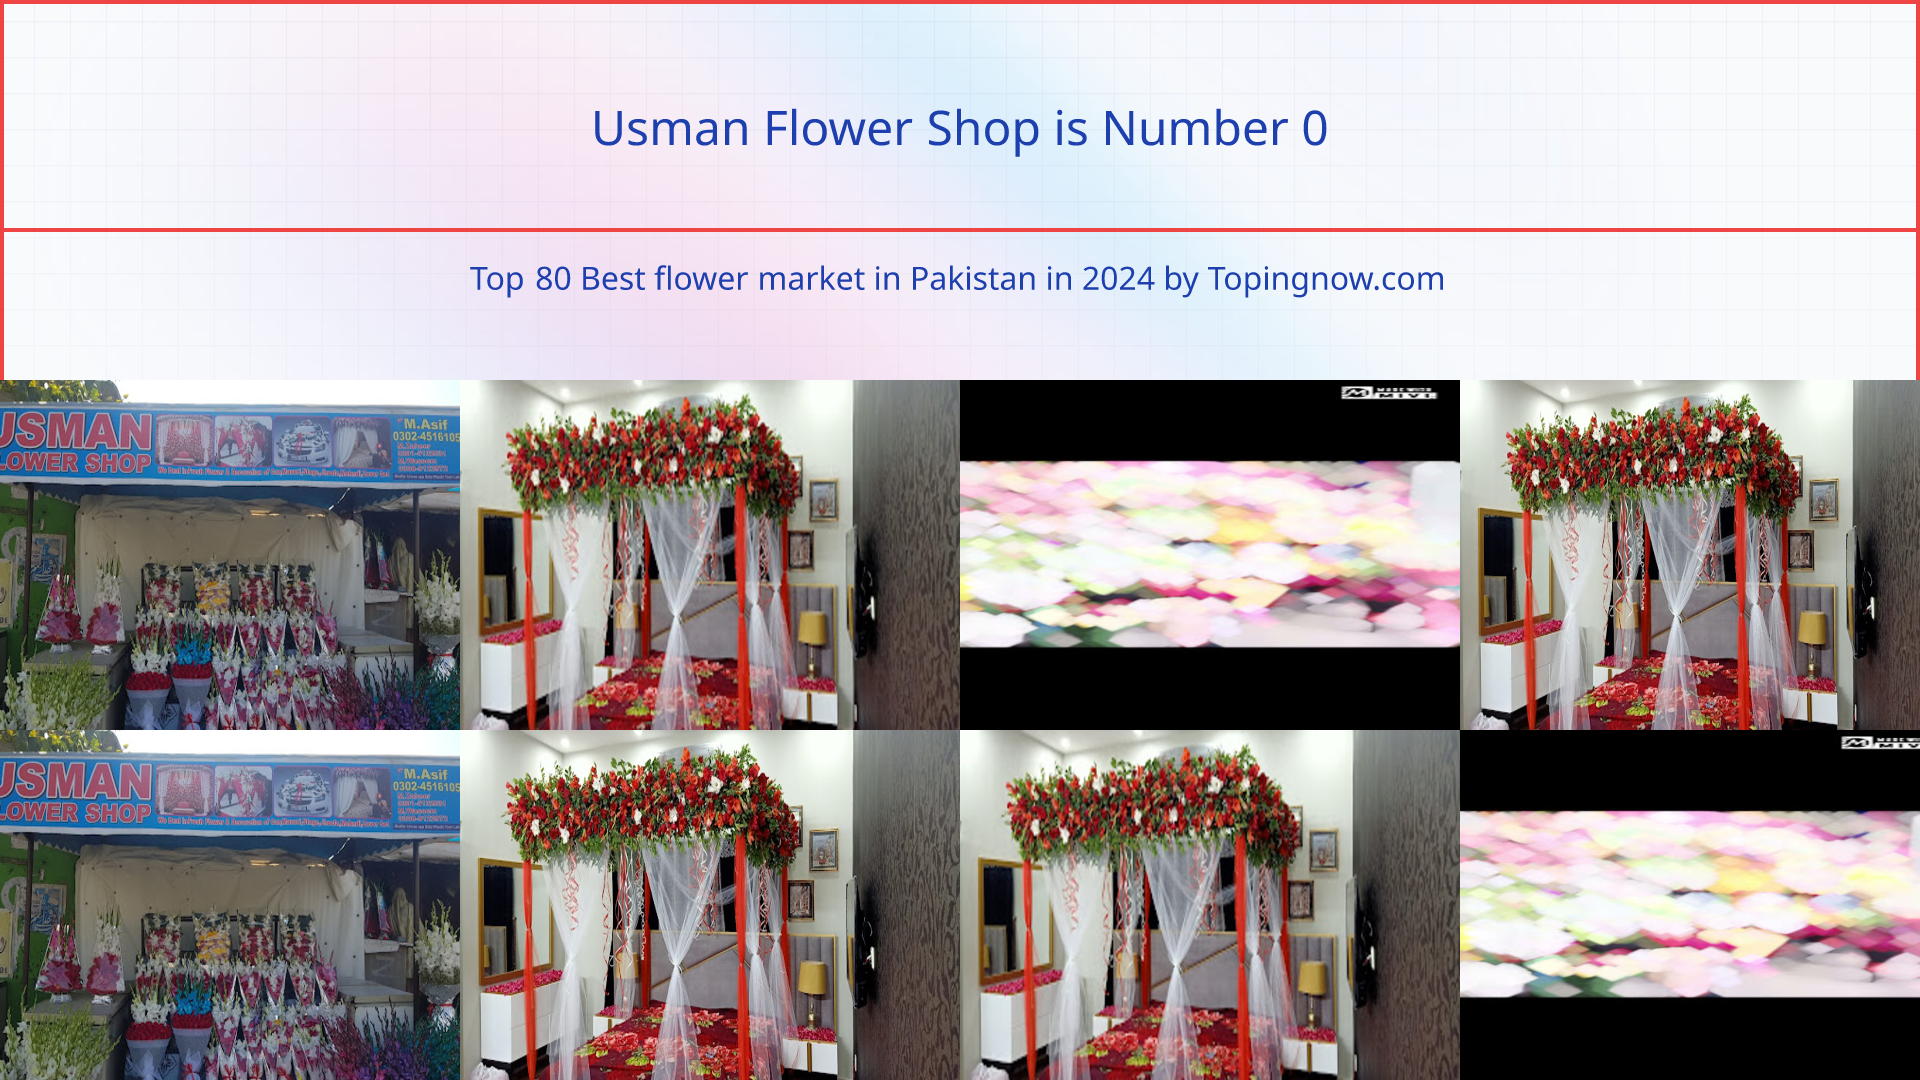 Usman Flower Shop: Top 80 Best flower market in Pakistan in 2024